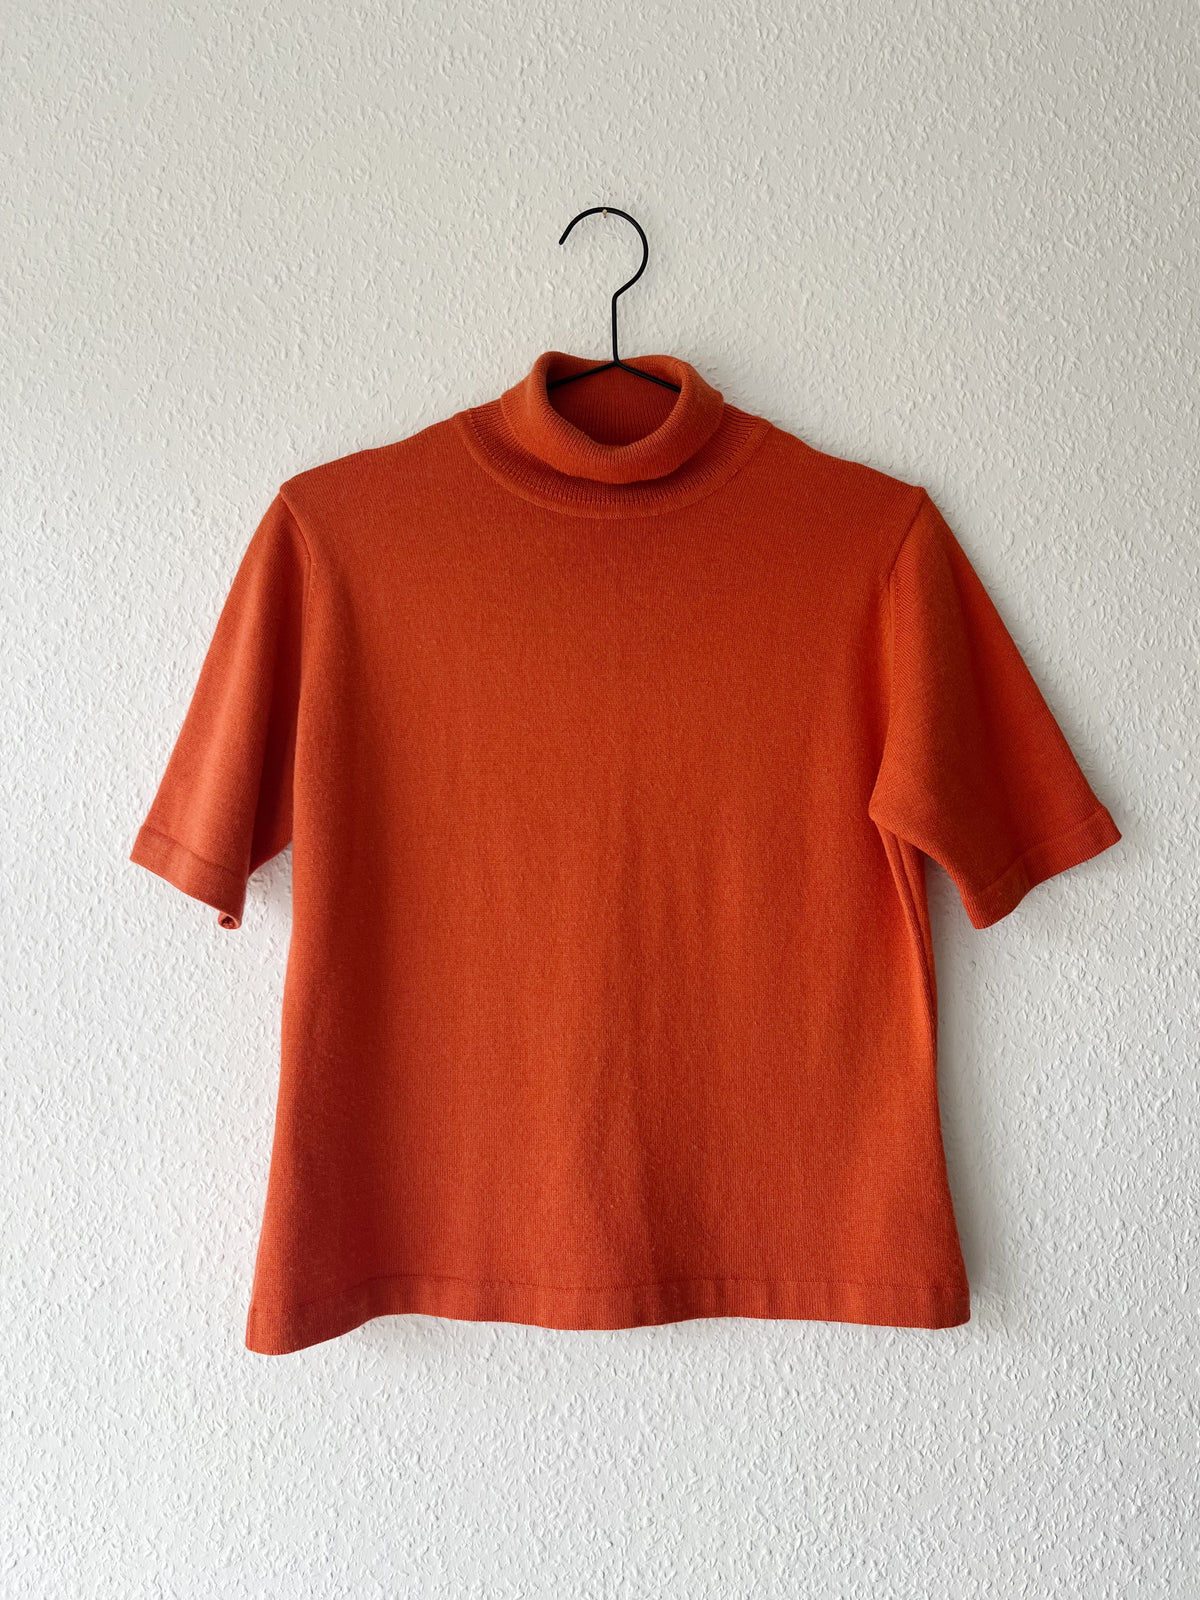 Kit Karnaby strik t-shirt